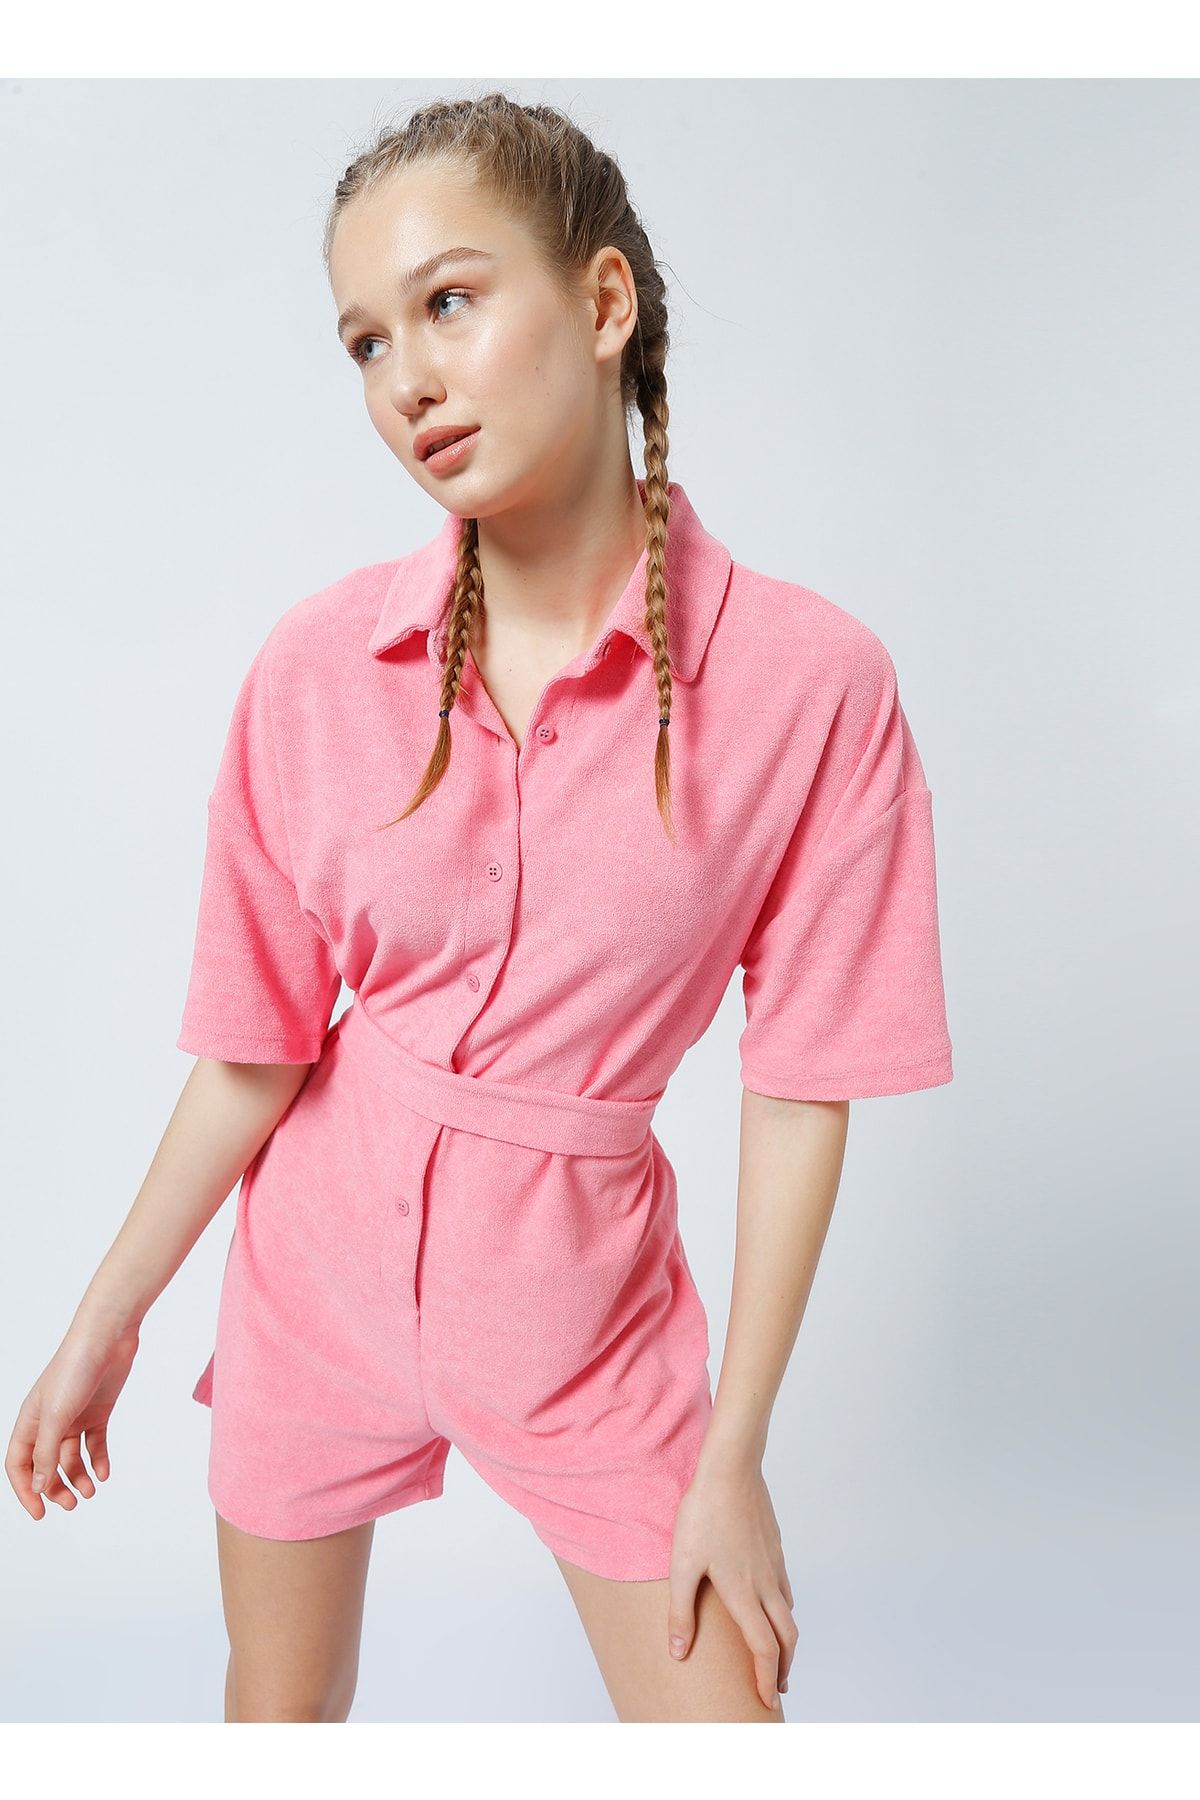 LİMON COMPANY Limon Howard Gömlek Yaka Bağlamalı Standart Kalıp Düz Pembe Kadın Tulum